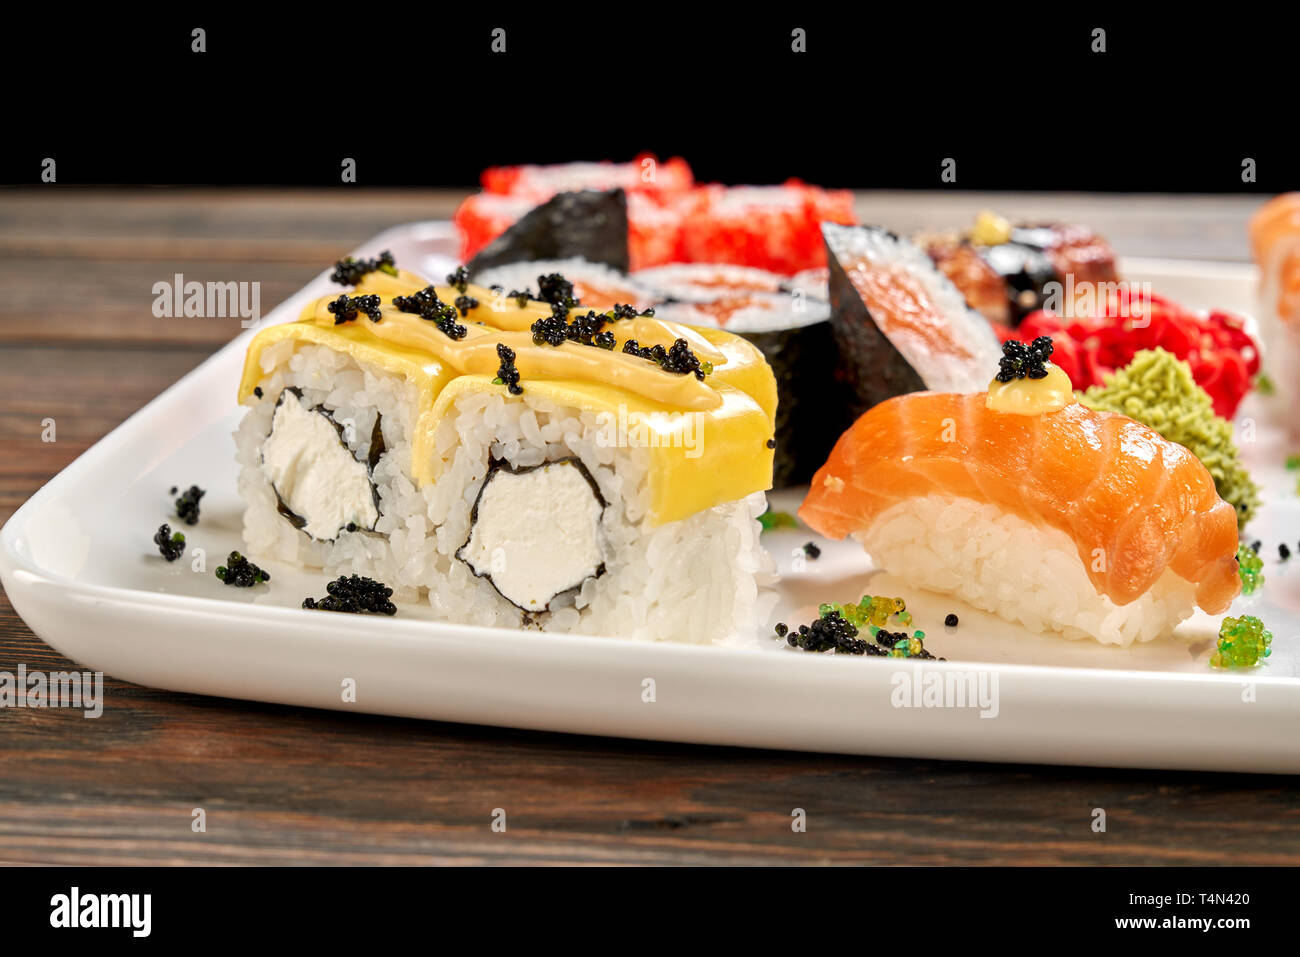 De délicieux petits pains au fromage avec du fromage à la crème, décoré de black caviar et de Mayo. Ensemble de sushi, maki nigiri sake, sake, wasabi et gingembre mariné. Banque D'Images